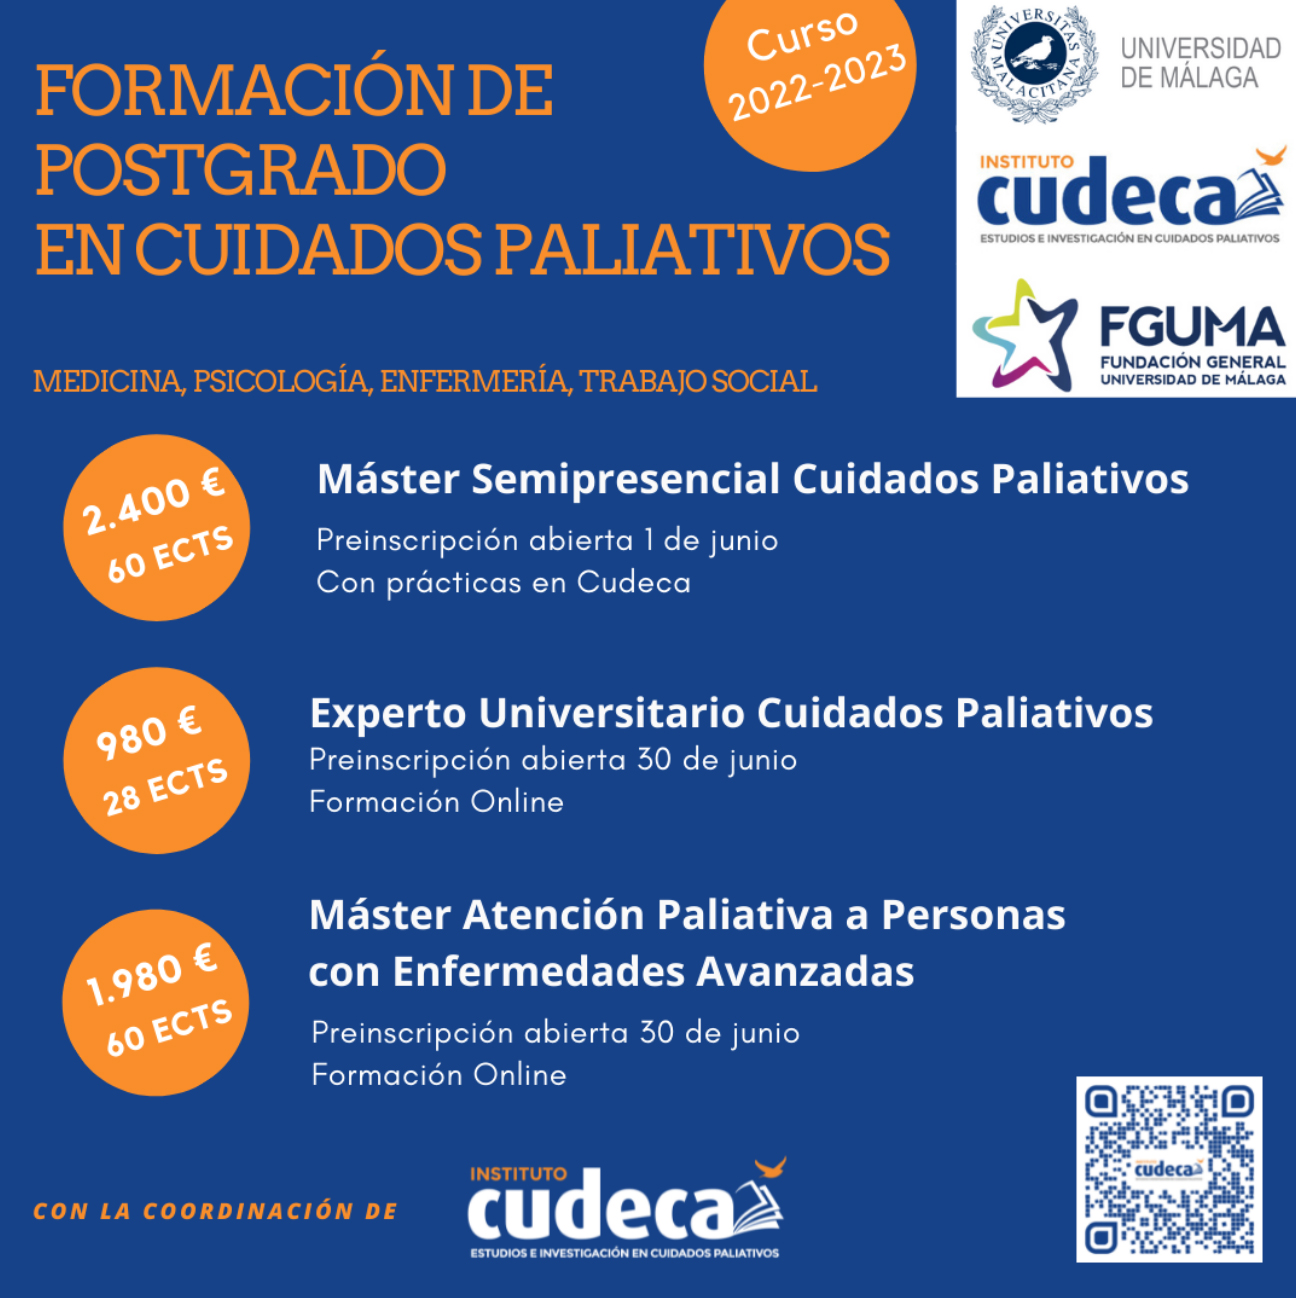 Abierto el plazo de preinscripción para los postgrados del Instituto CUDECA a través de la Universidad de Málaga